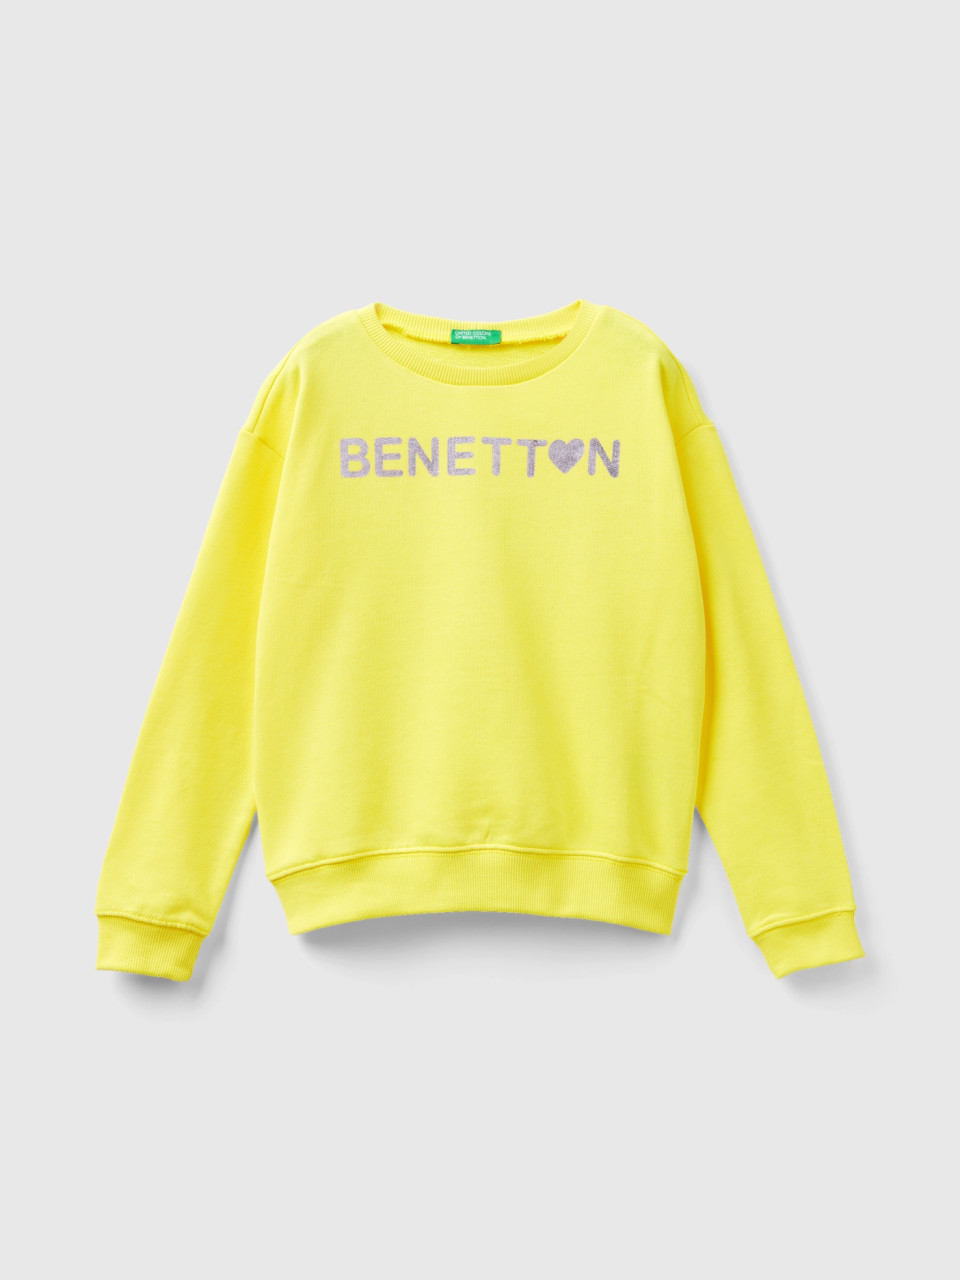 Benetton, Sweatshirt Aus 100% Baumwolle Mit Logo, Gelb, female